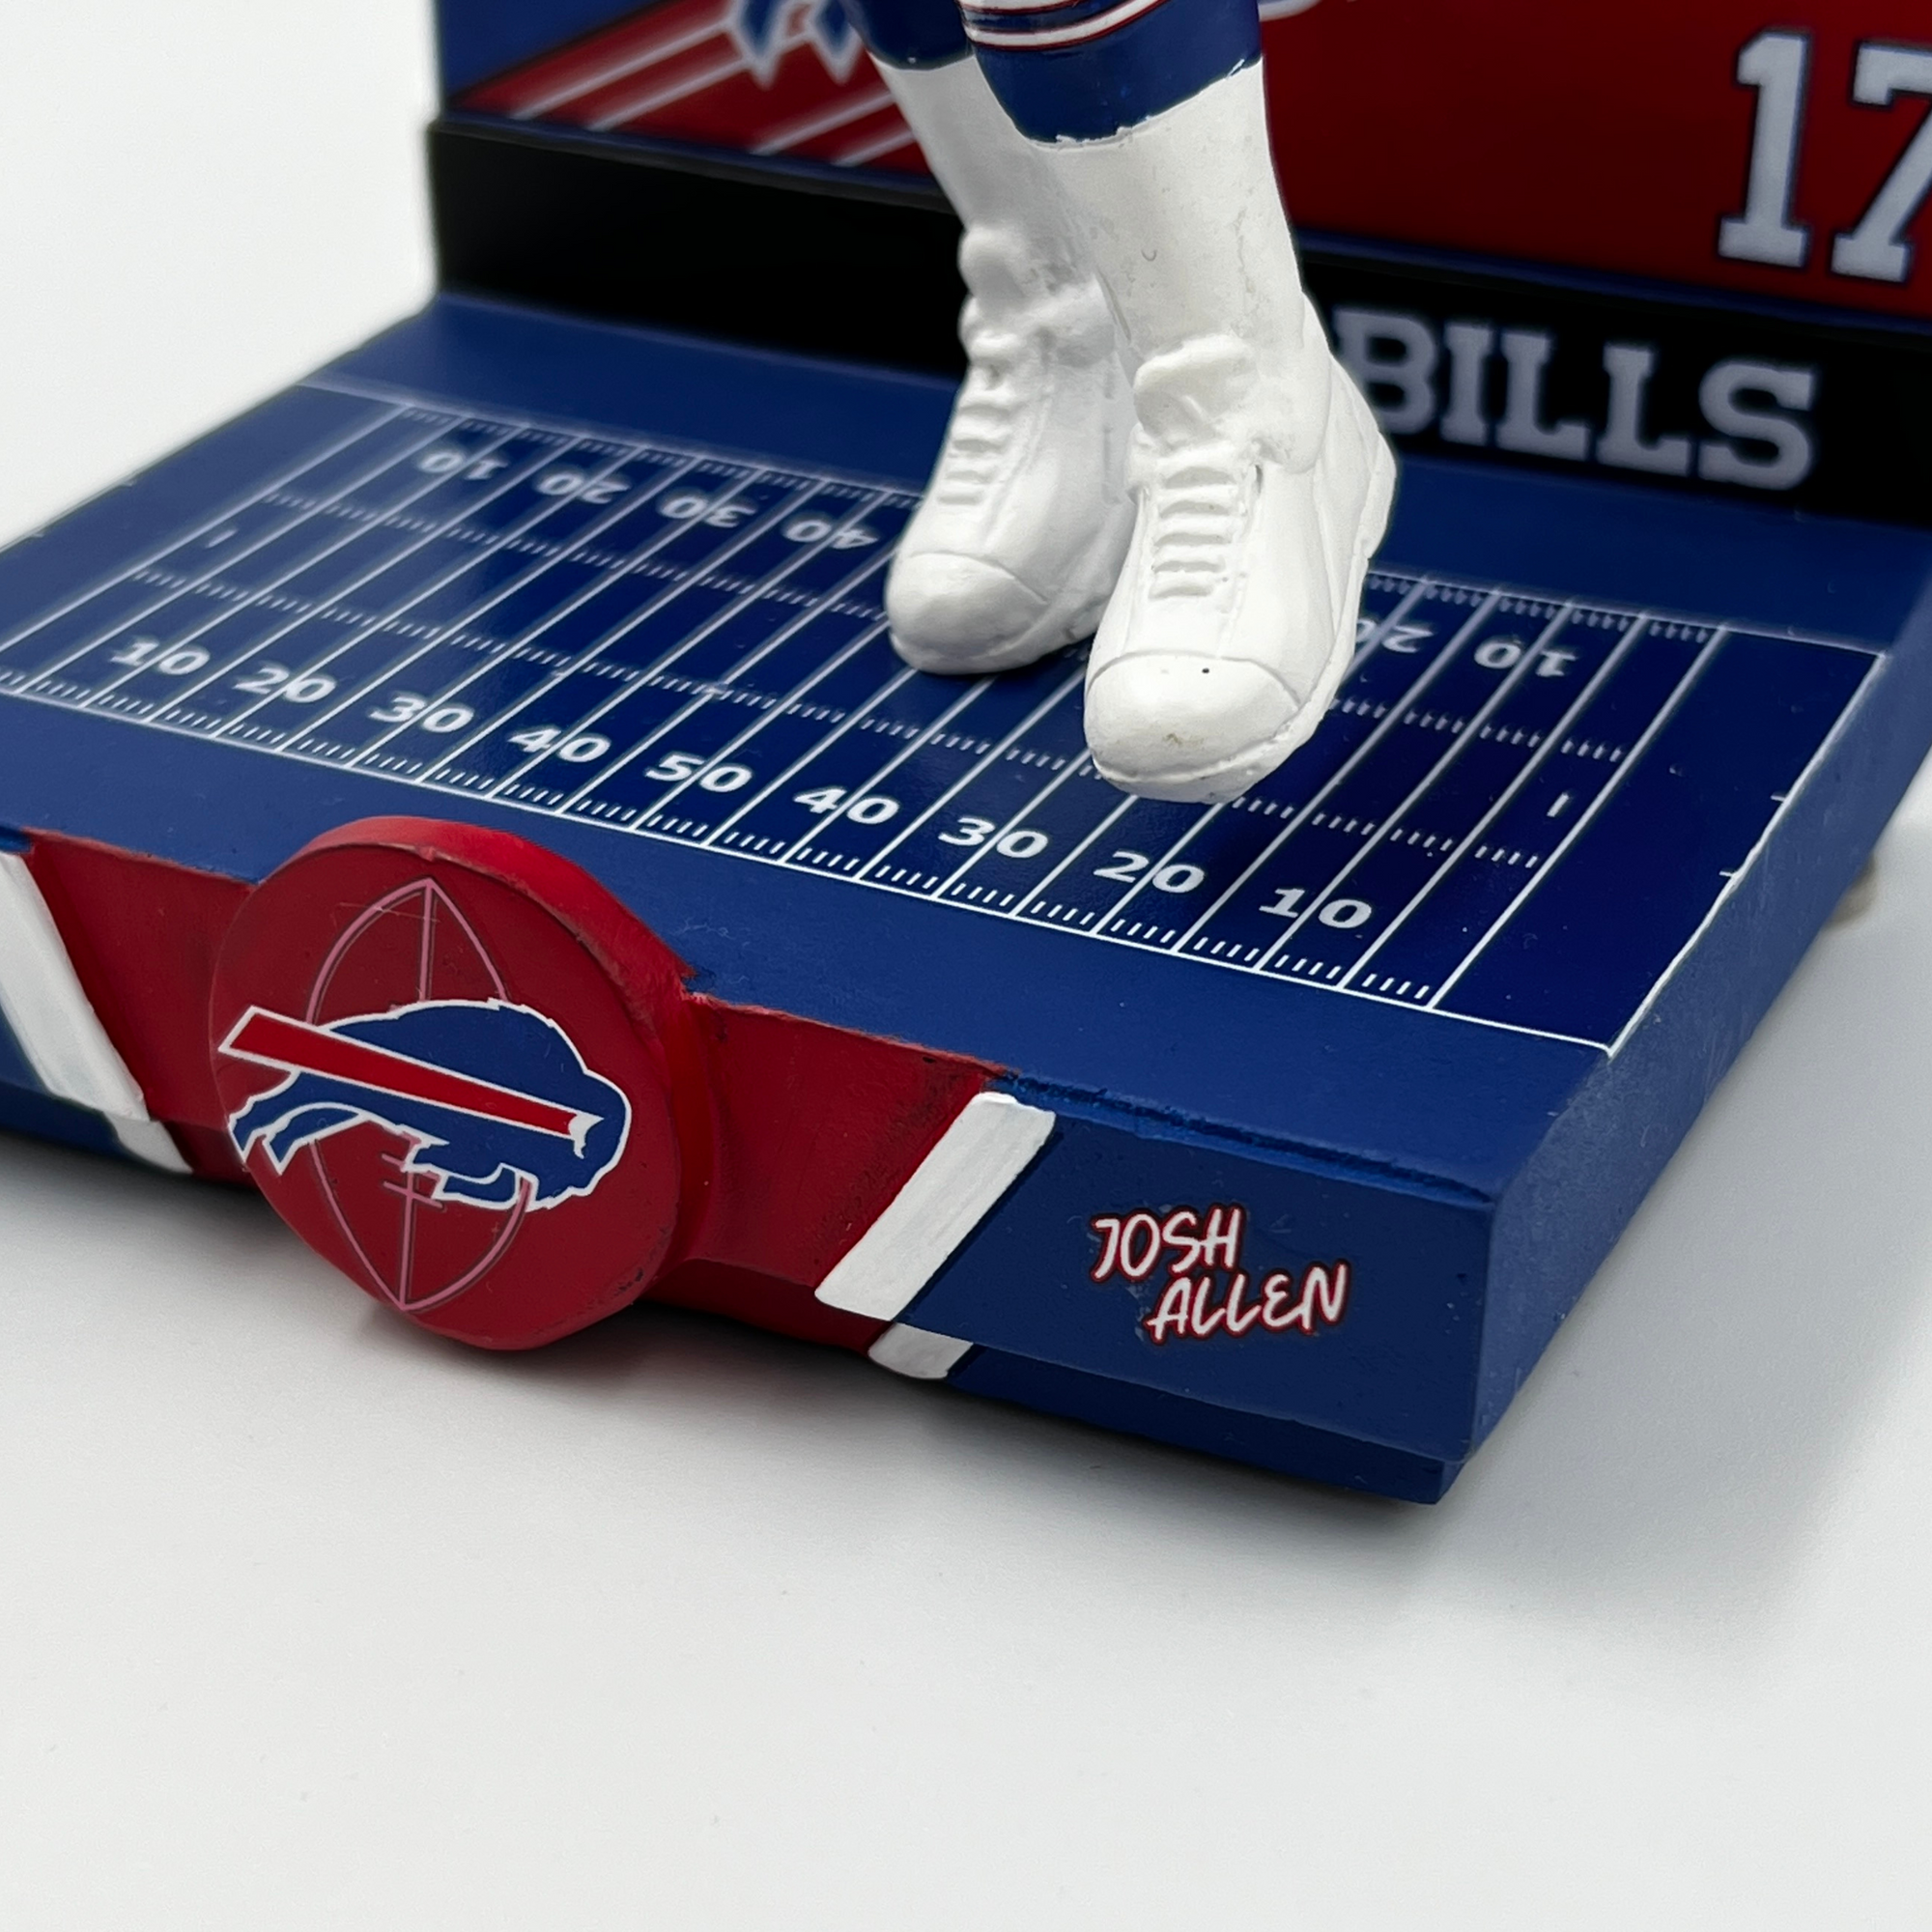 Buffalo Bills Allen Highlight Series Player Bobblehead